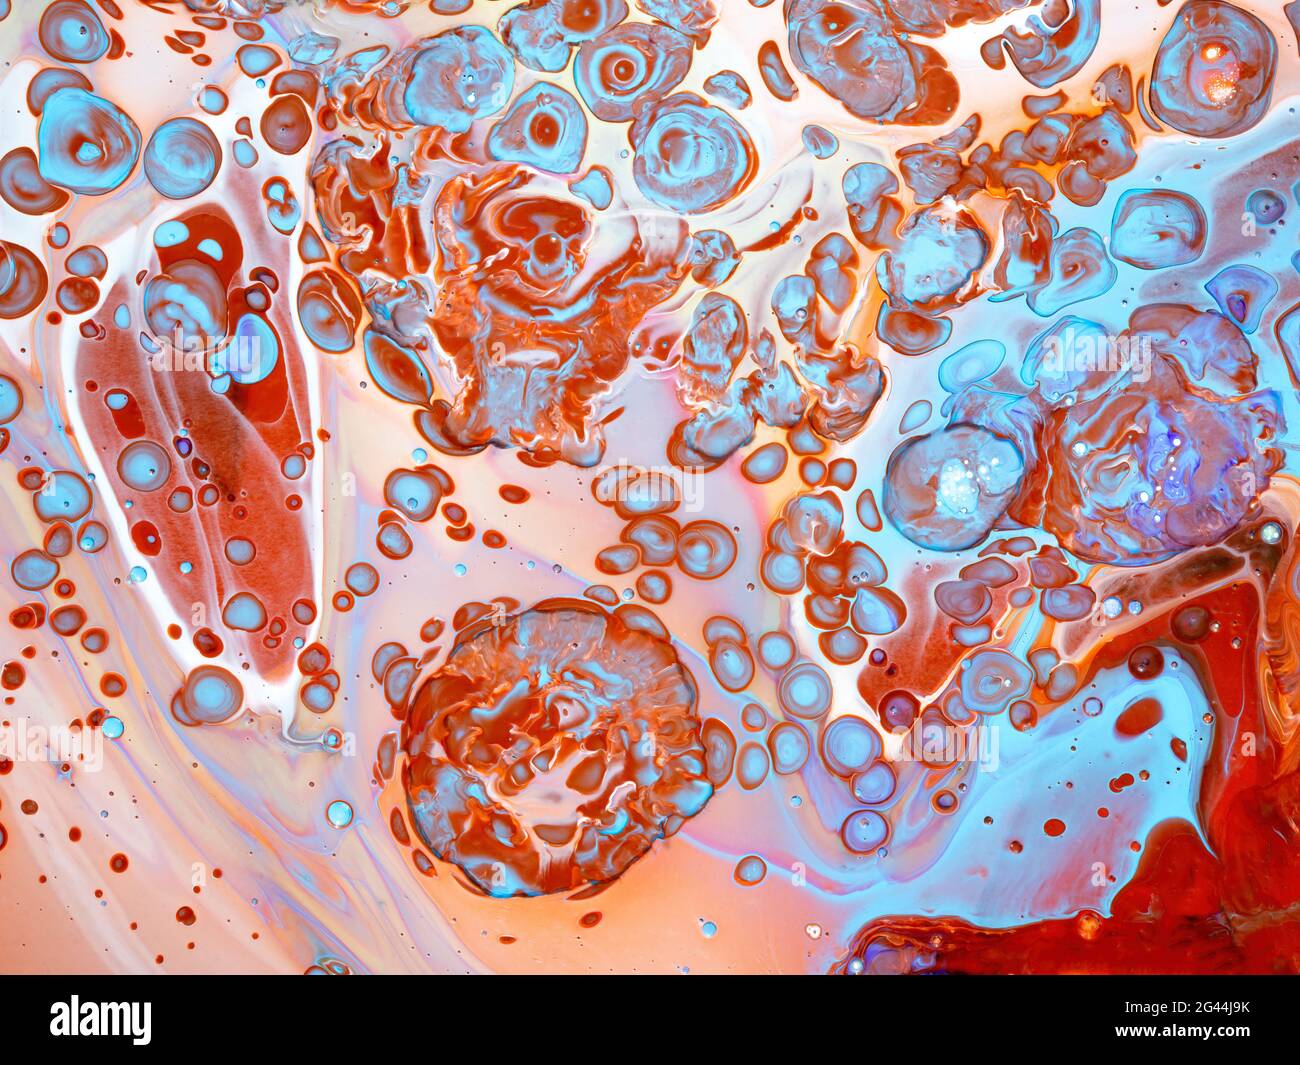 Immagine astratta di colori misti di vernice acrilica Foto Stock